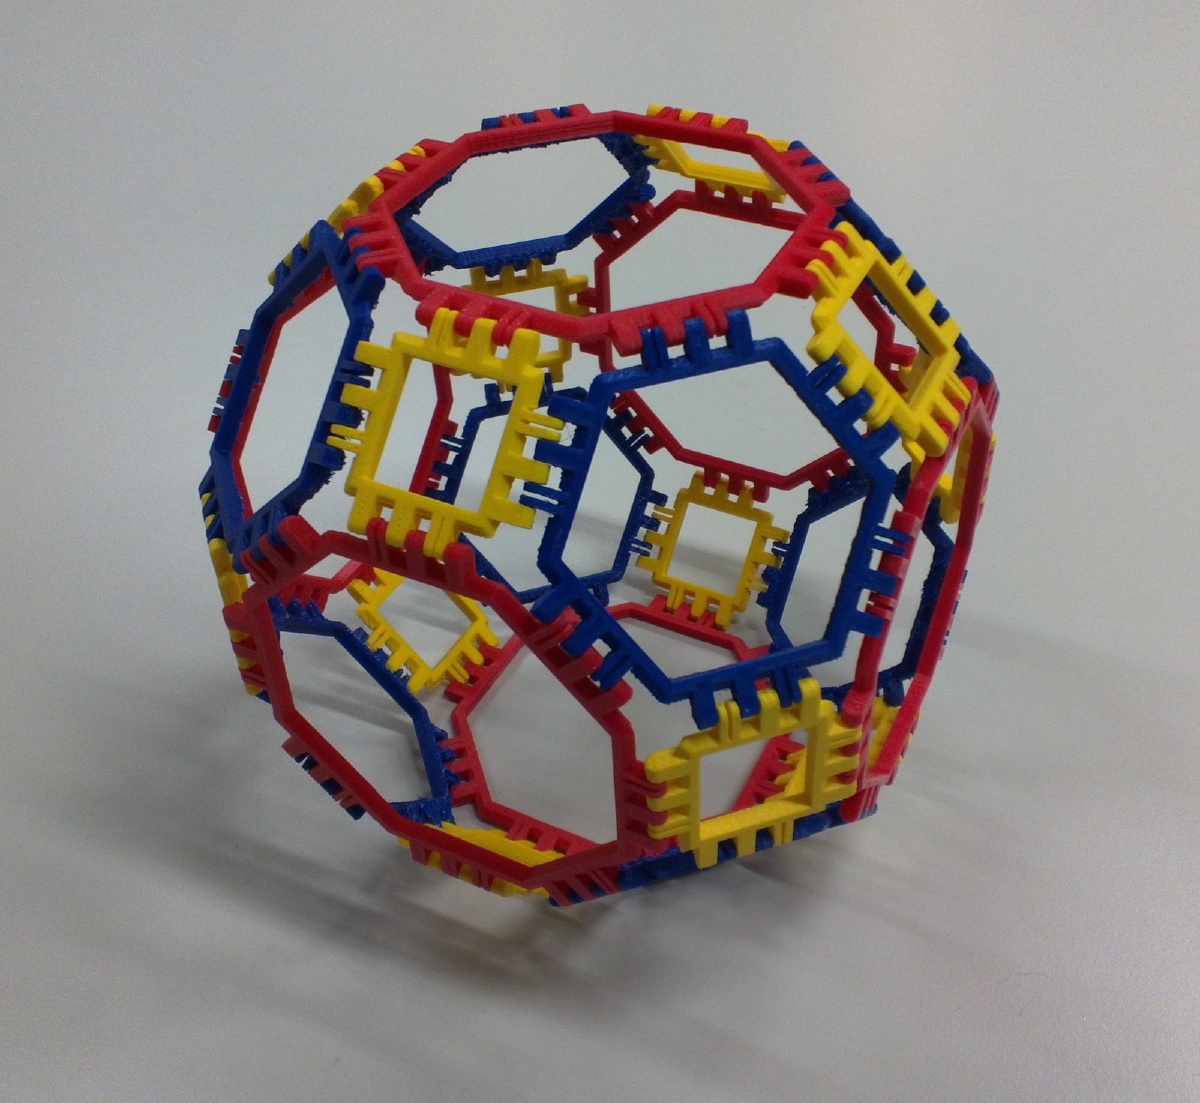 Truncated Cuboctahedron